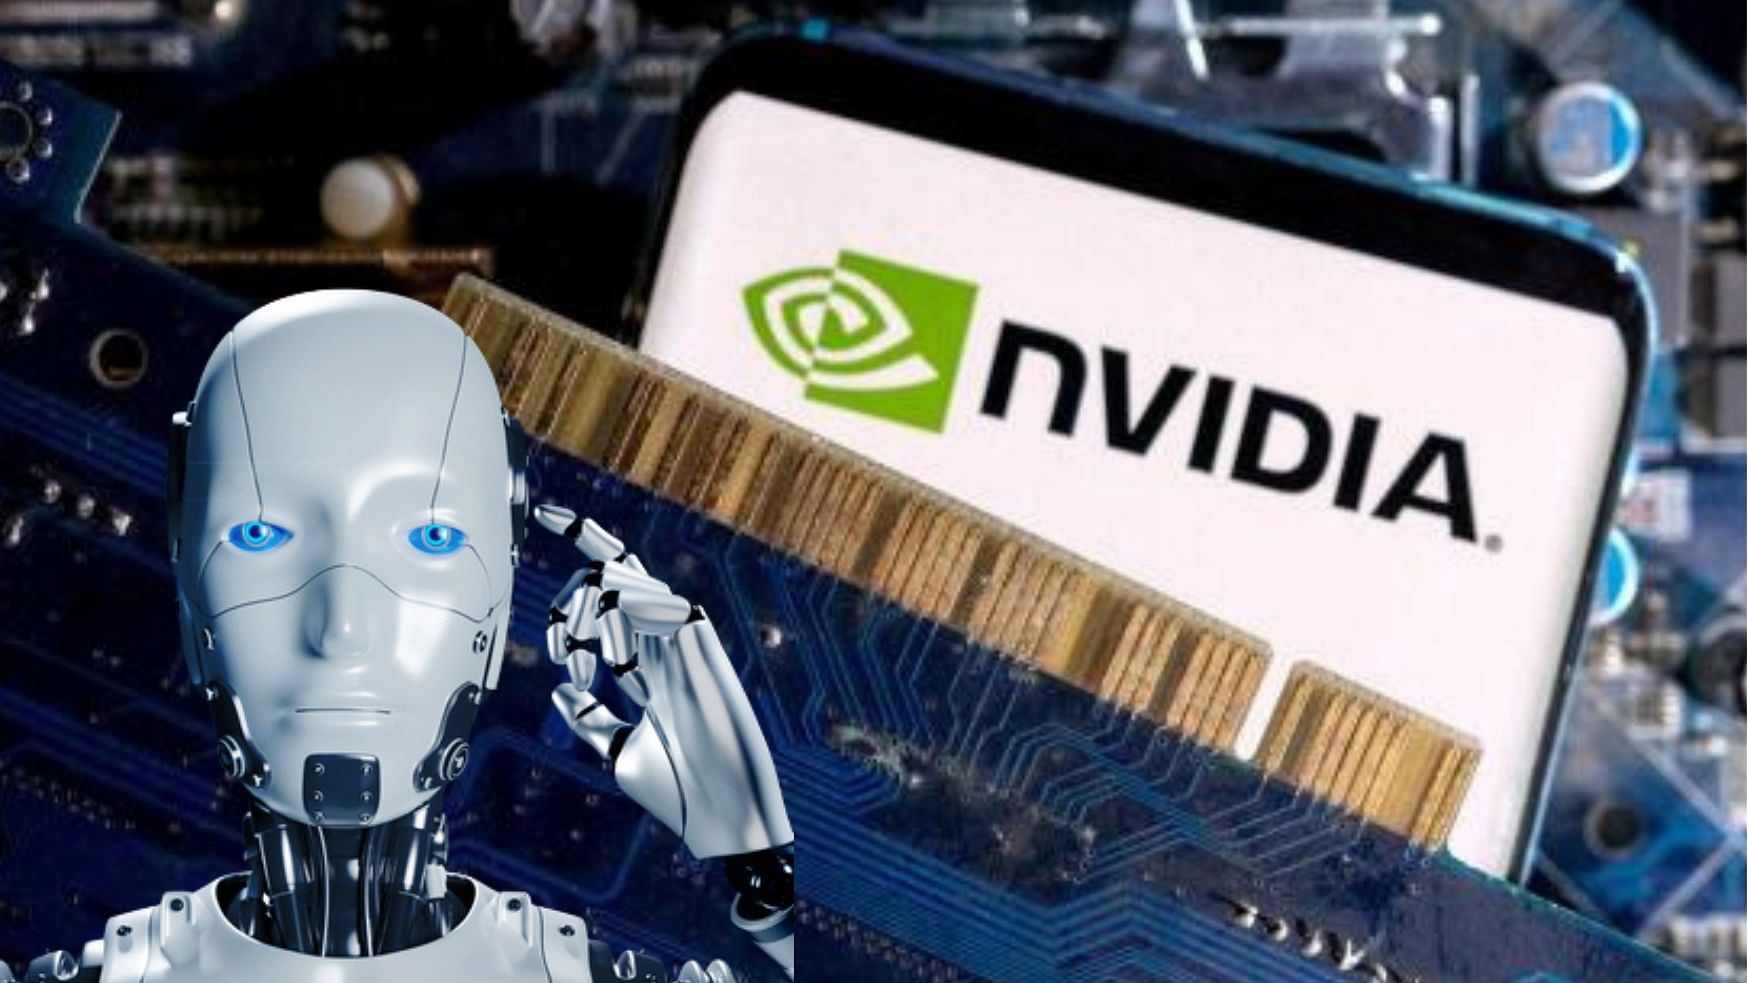 <div class="paragraphs"><p>Nvidia logo and a humanoid robot.</p></div>